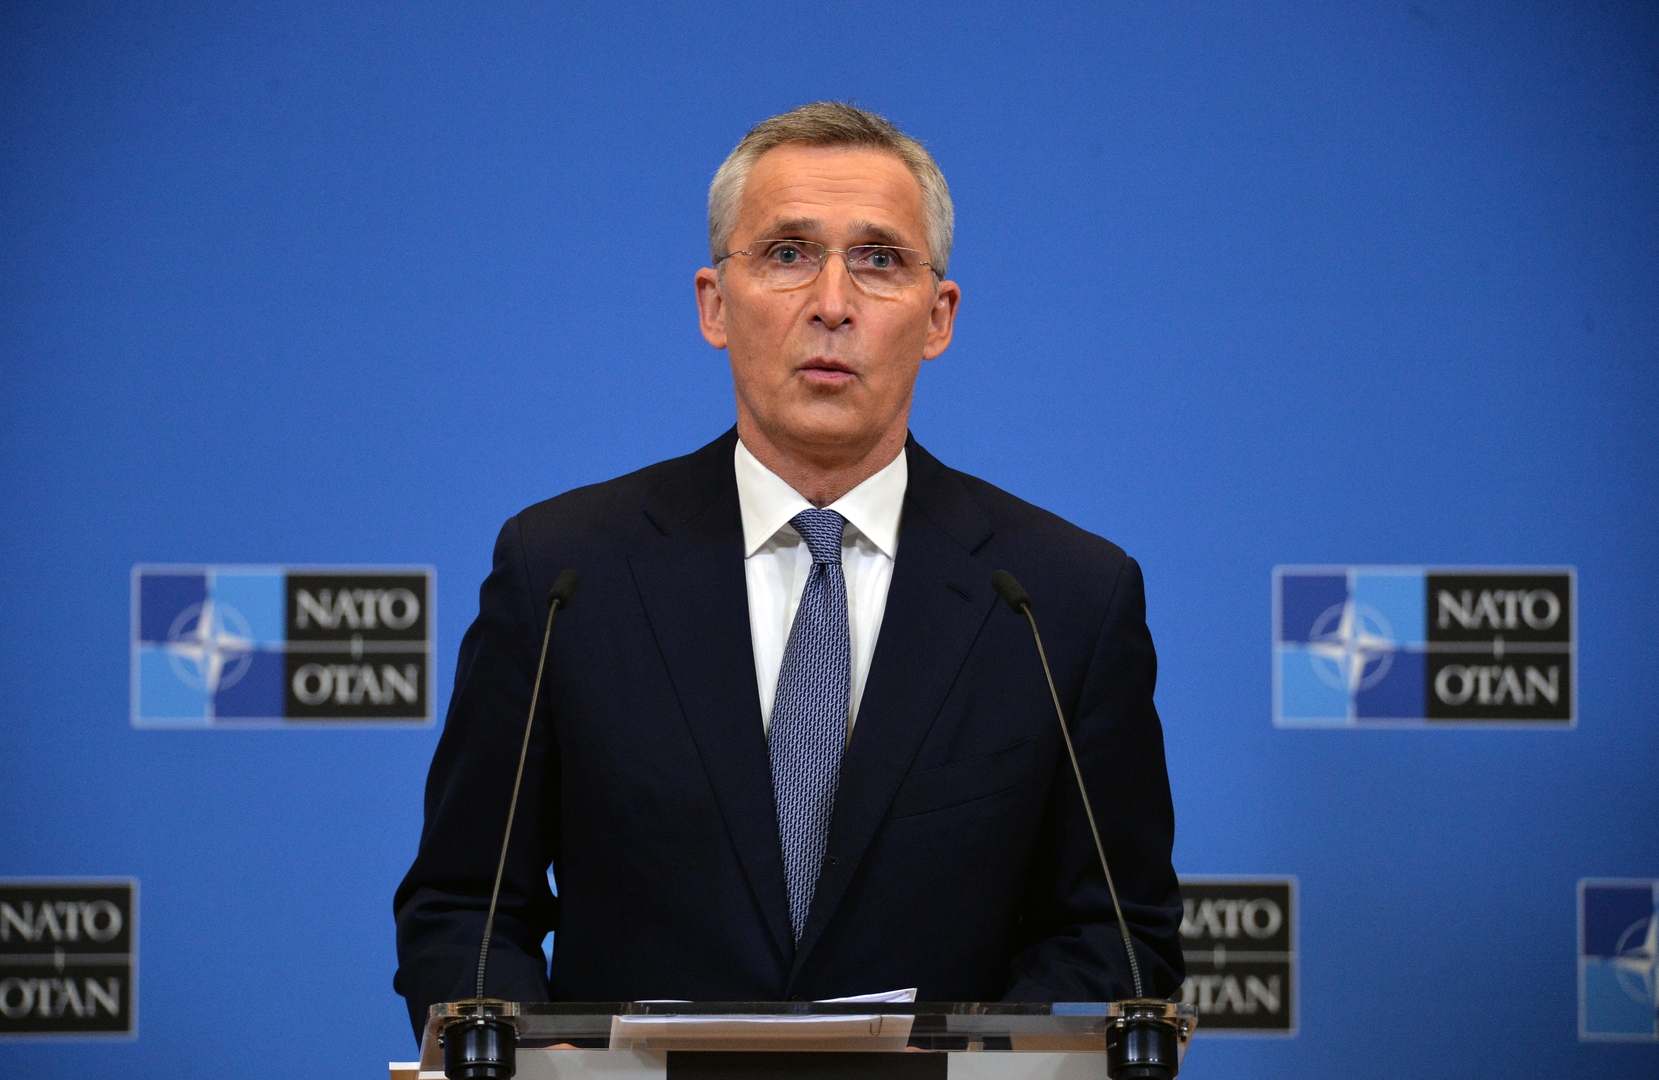 ستولتنبرغ: ليس بإمكاني ضمان انضمام فنلندا والسويد قريبا لحلف الناتو